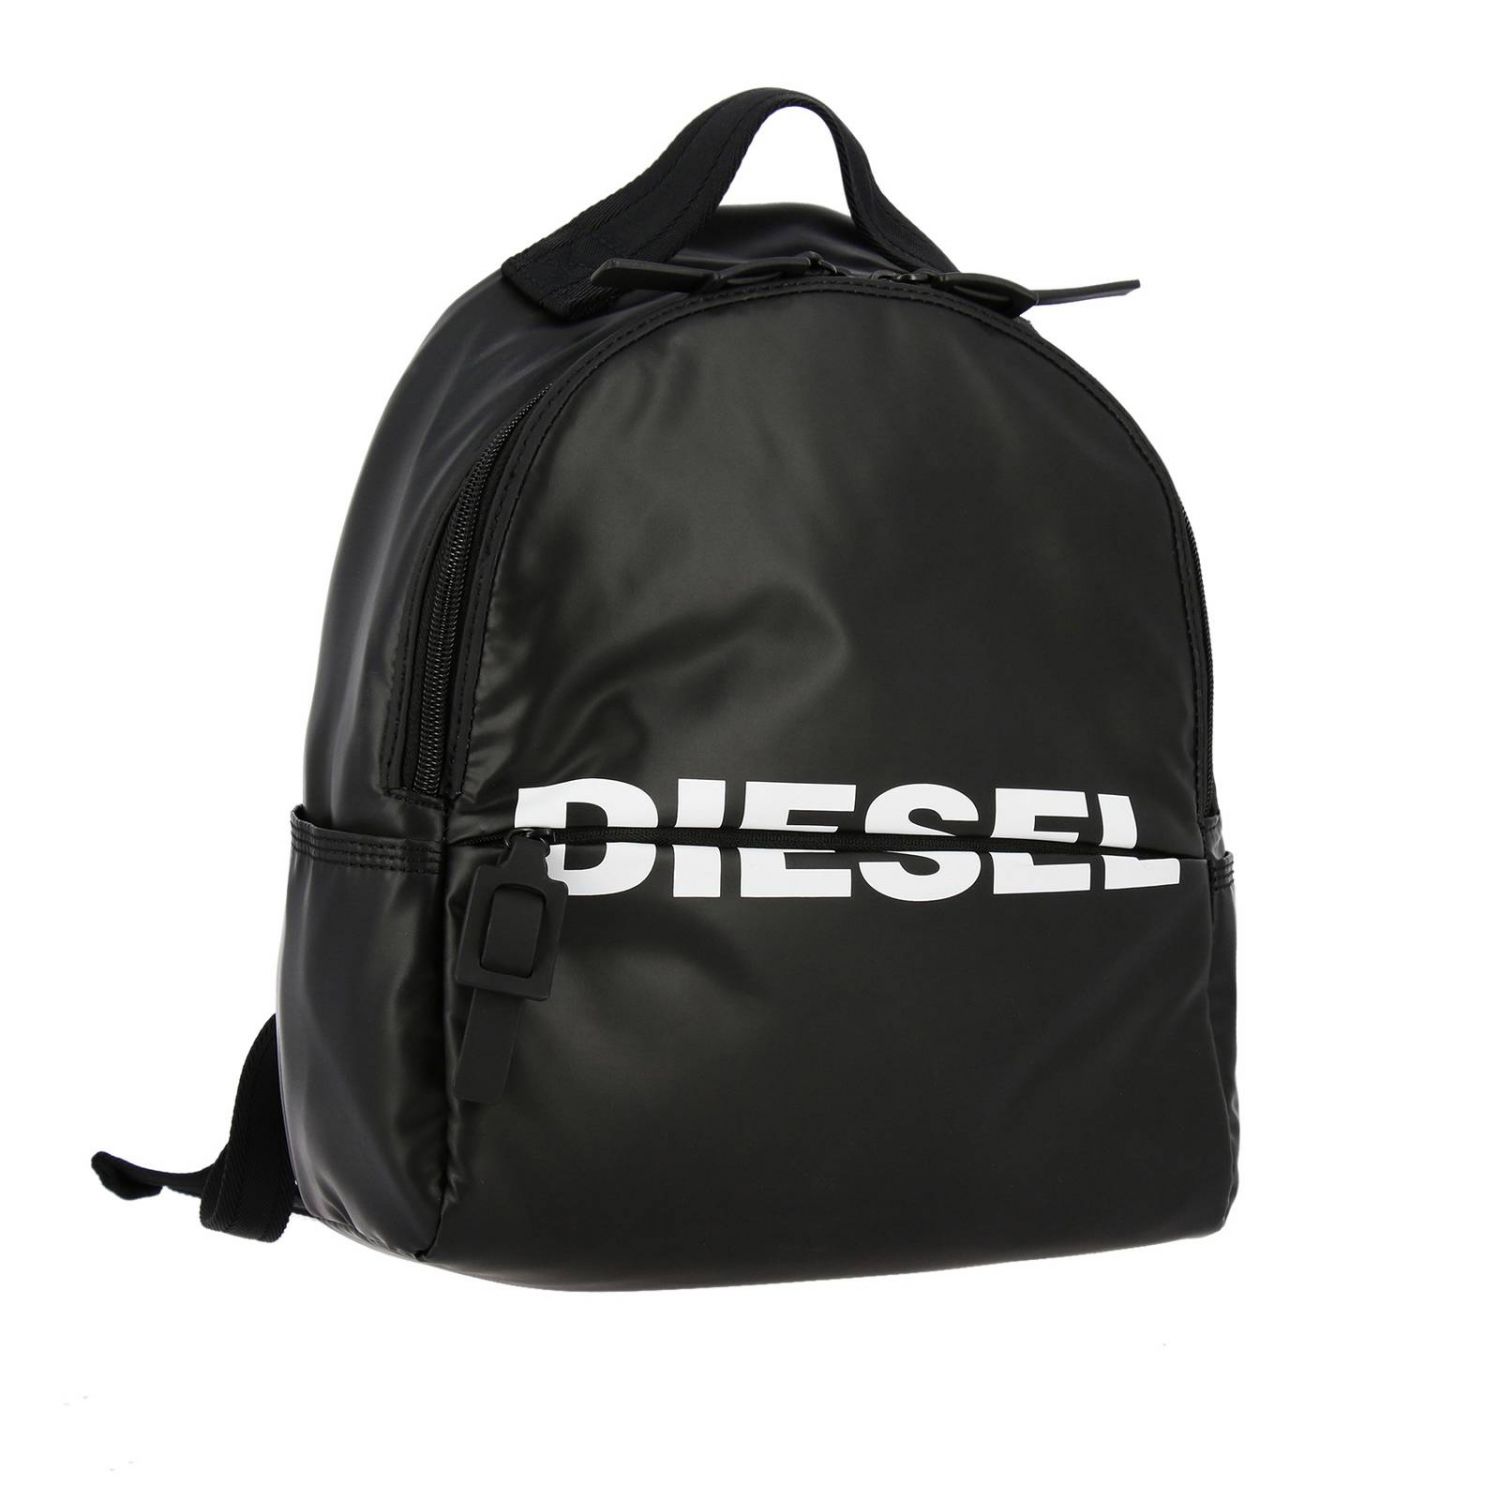 Diesel Outlet: Shoulder bag women - Black | Backpack Diesel X05529 ...